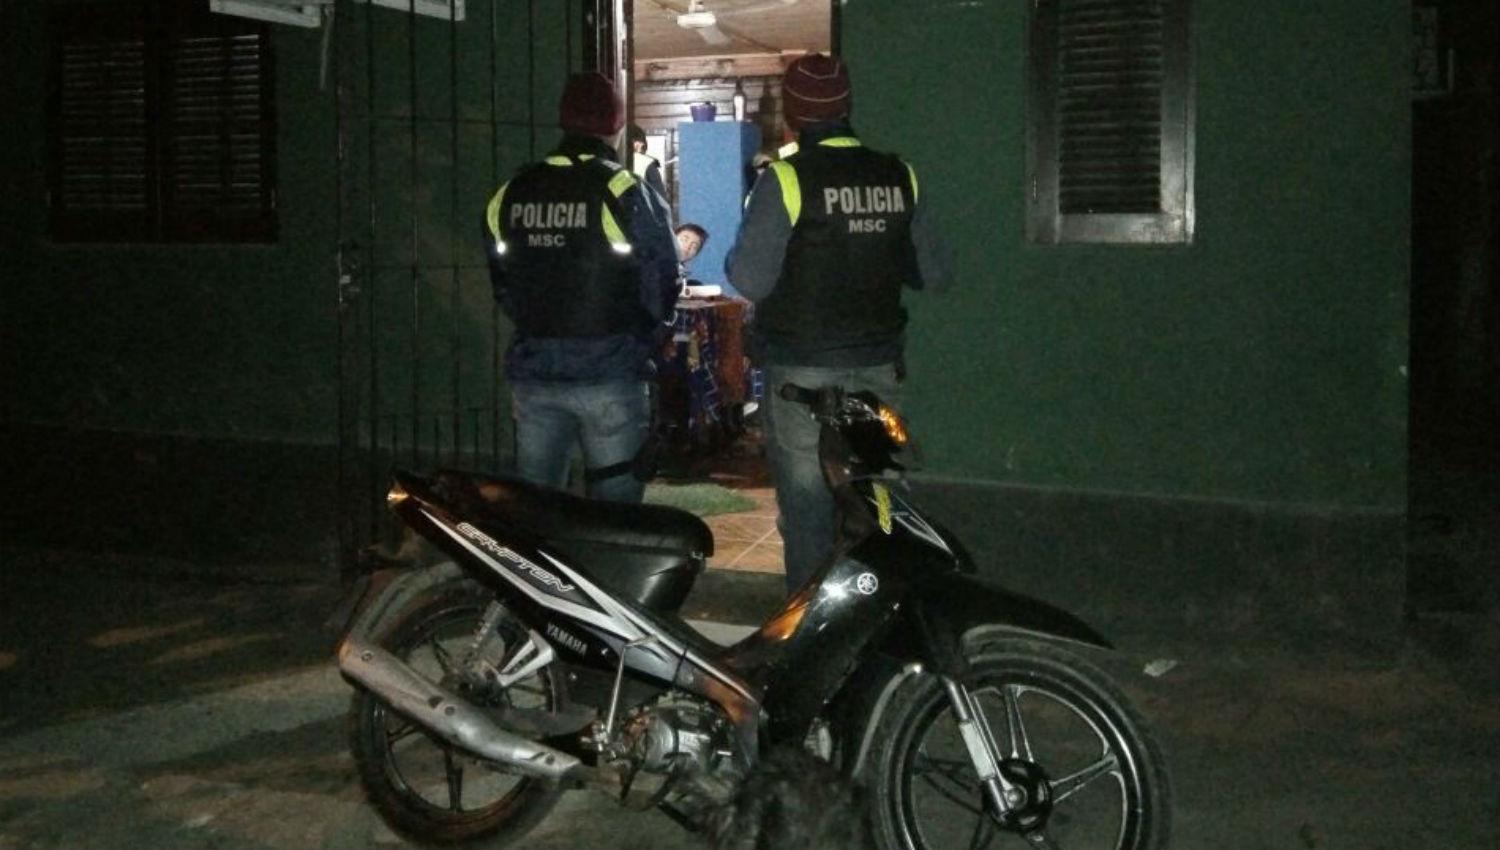 policia-tucuman-delitos-policiales-crimen-noticias